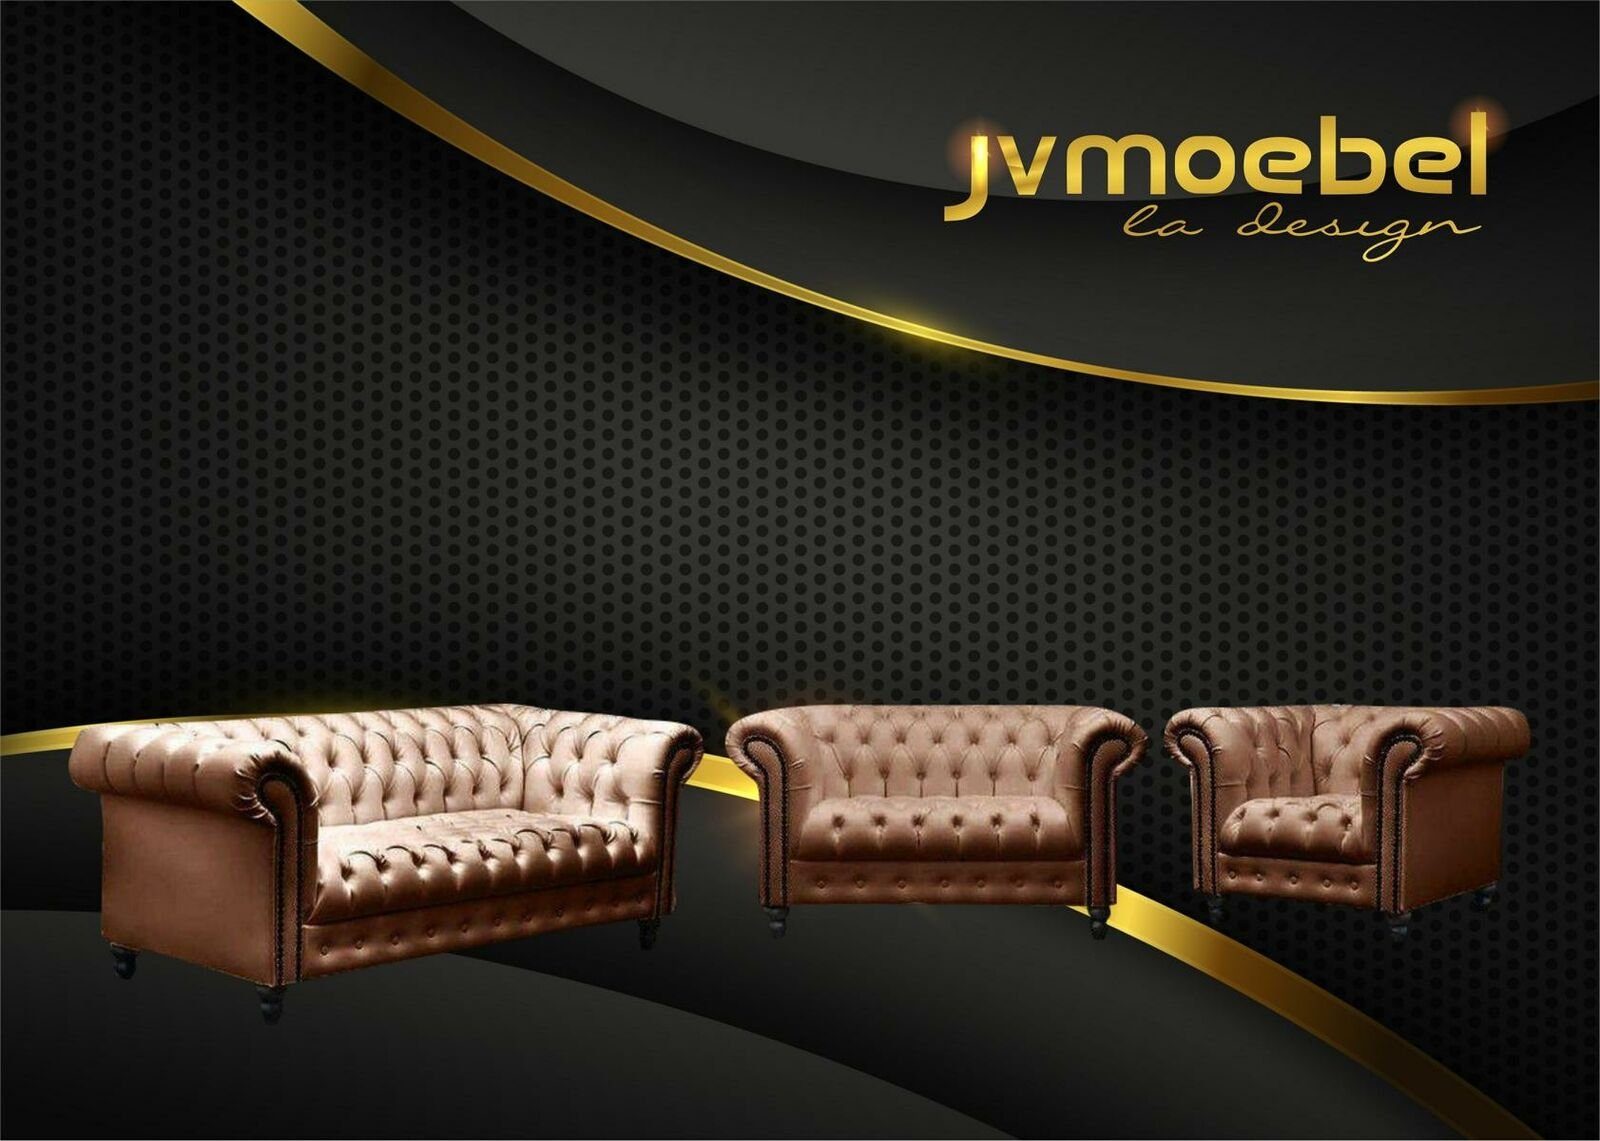 Chesterfield JVmoebel Sofa, Braun Design Sofagarnitur Couch Möbel Wohnzimmer